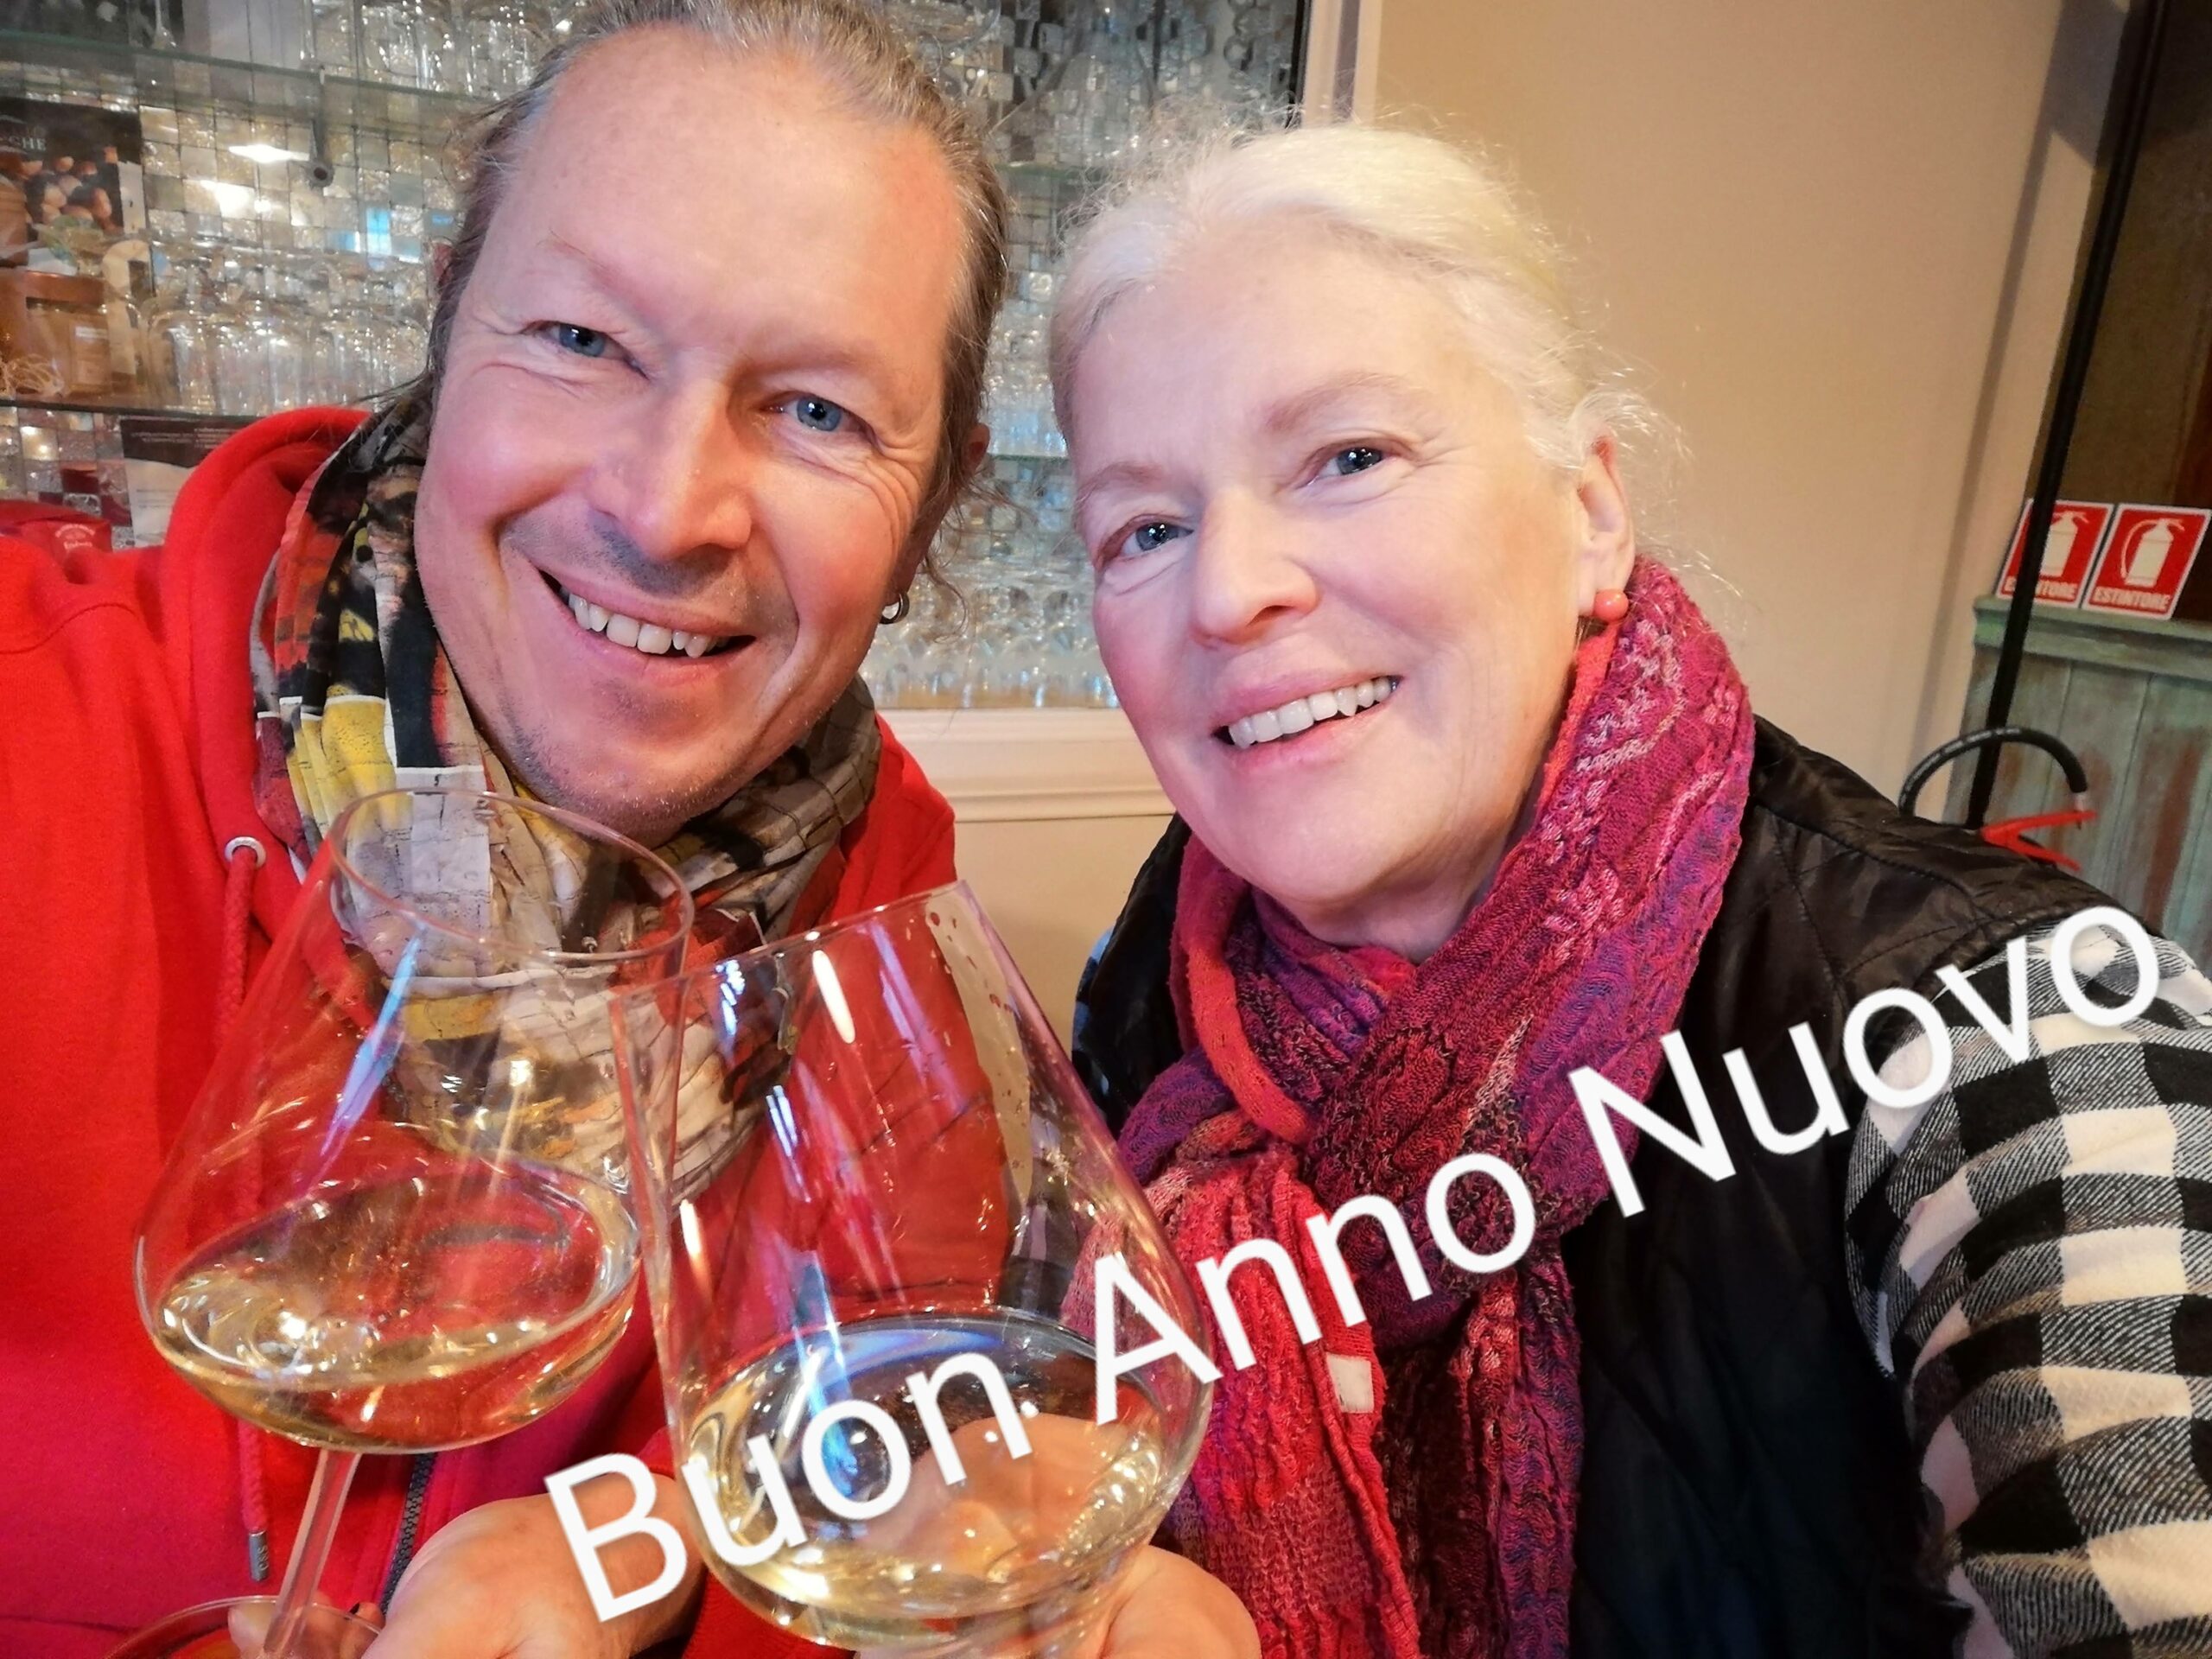 AUGURI – Buon Anno Nuovo – Gutes Neues Jahr